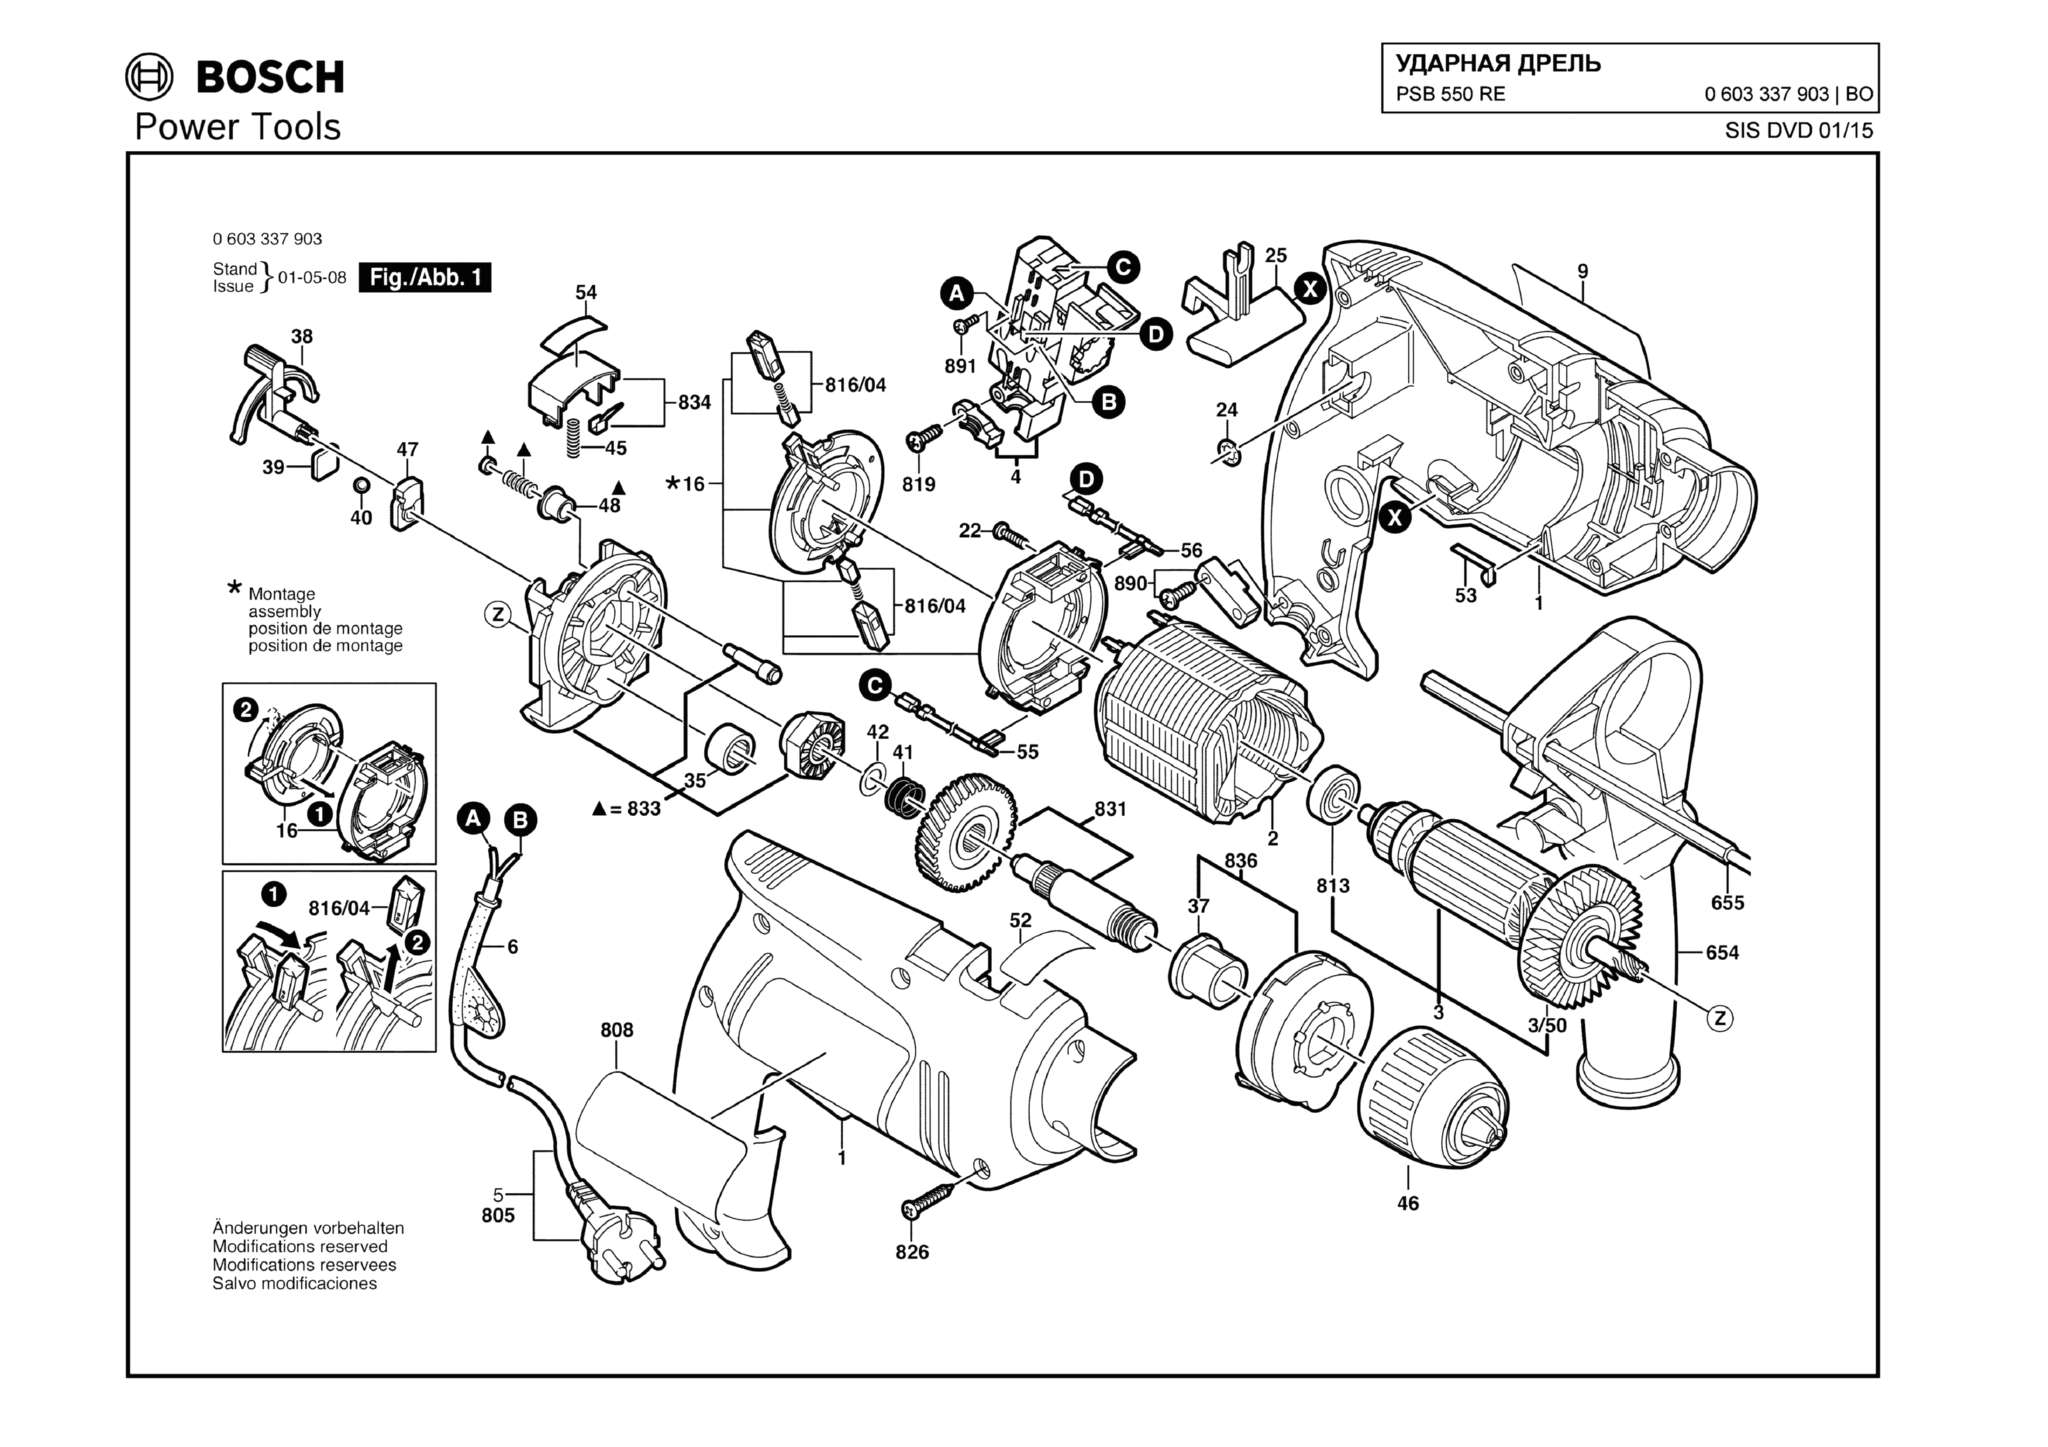 Запчасти, схема и деталировка Bosch PSB 550 RE (ТИП 0603337903)